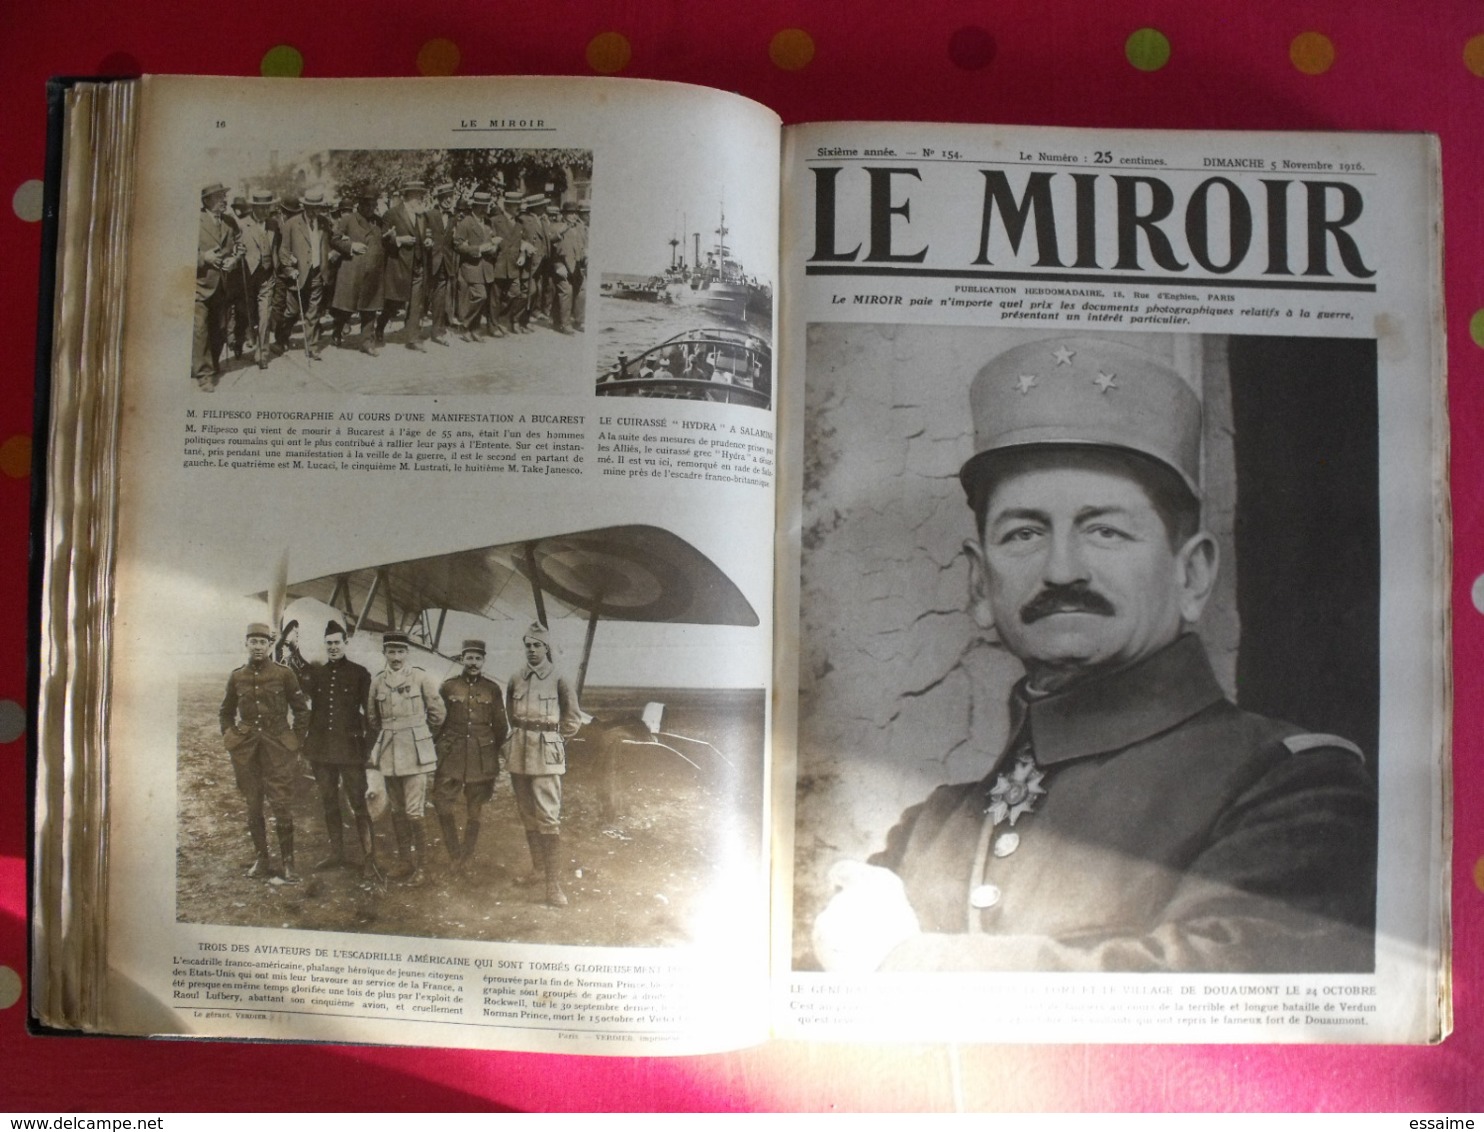 Le miroir. 1916/17. 52 numéros. l'actualité de l'époque très illustrée pendant la guerre 14-18. recueil, reliure.